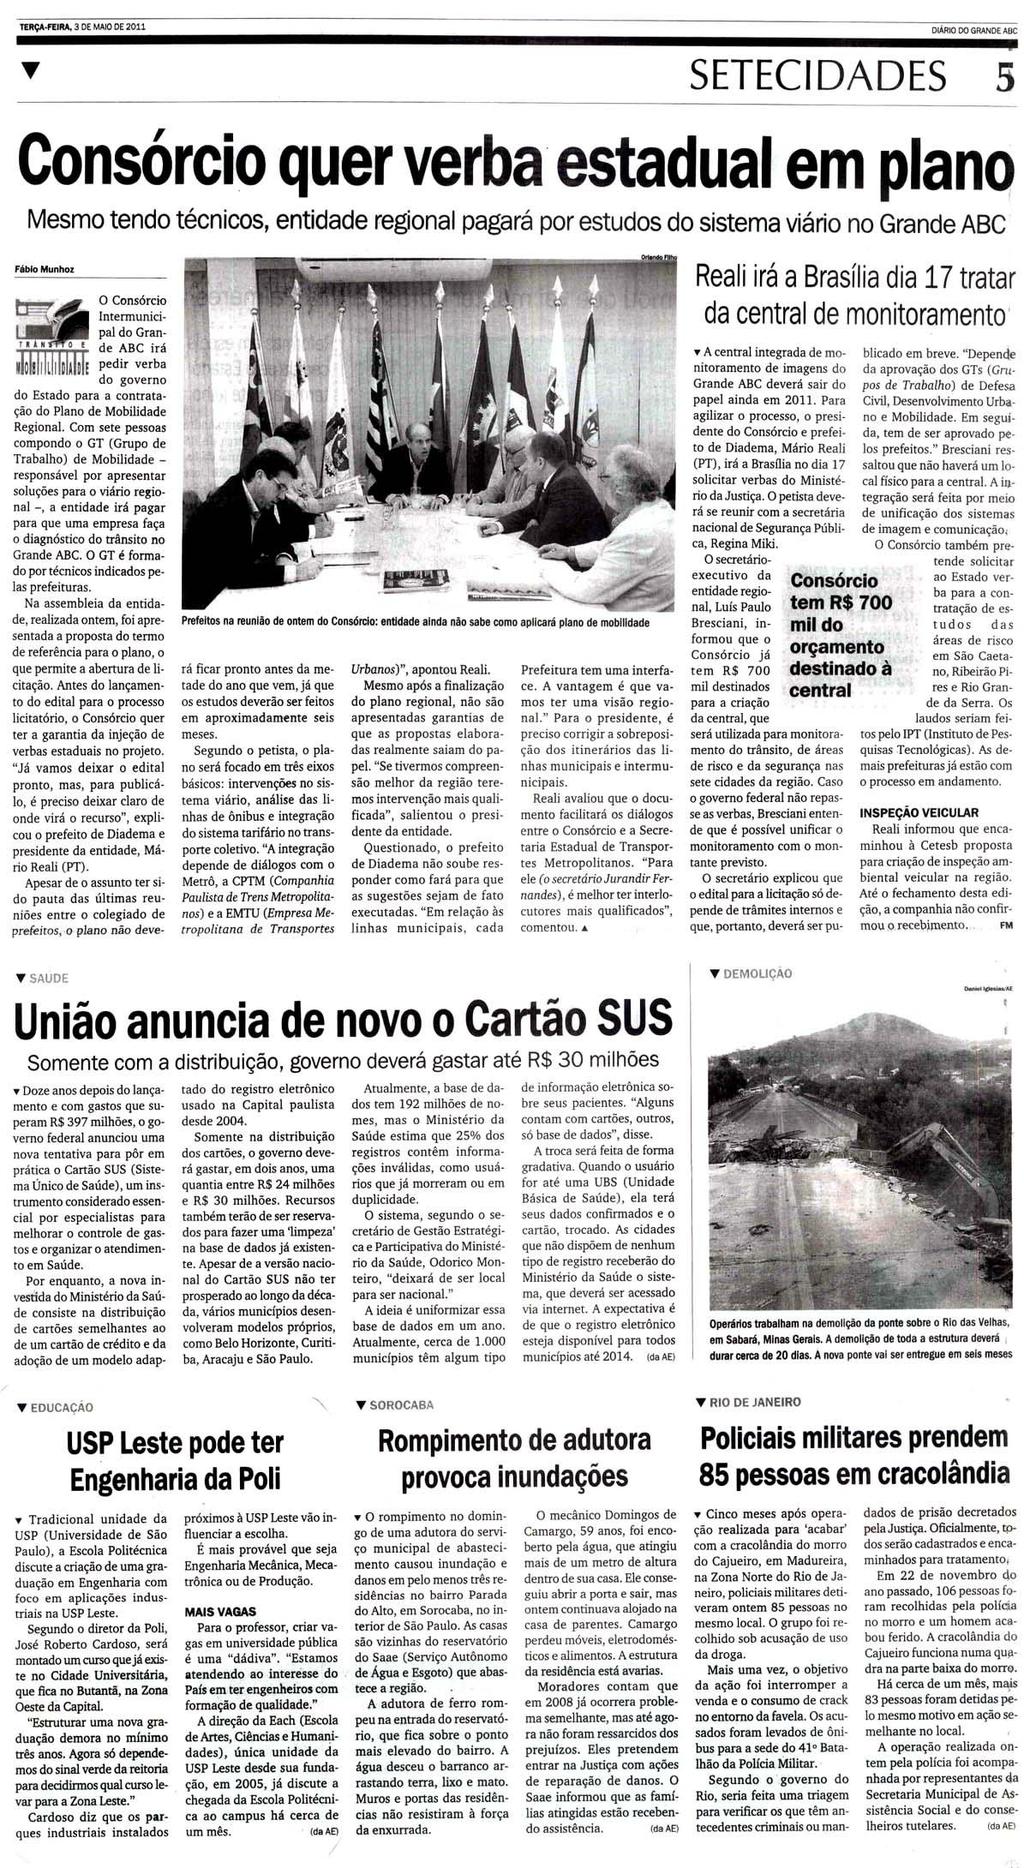 Diário do Grande ABC - Santo André - SP 3 de maio de 2011 Editoria Setecidades, página 5 Jornal Destak 4 de maio de 2011 USP-Leste pode ter cursos da Poli e FEA A_Escola Politécnica (Poli) e a